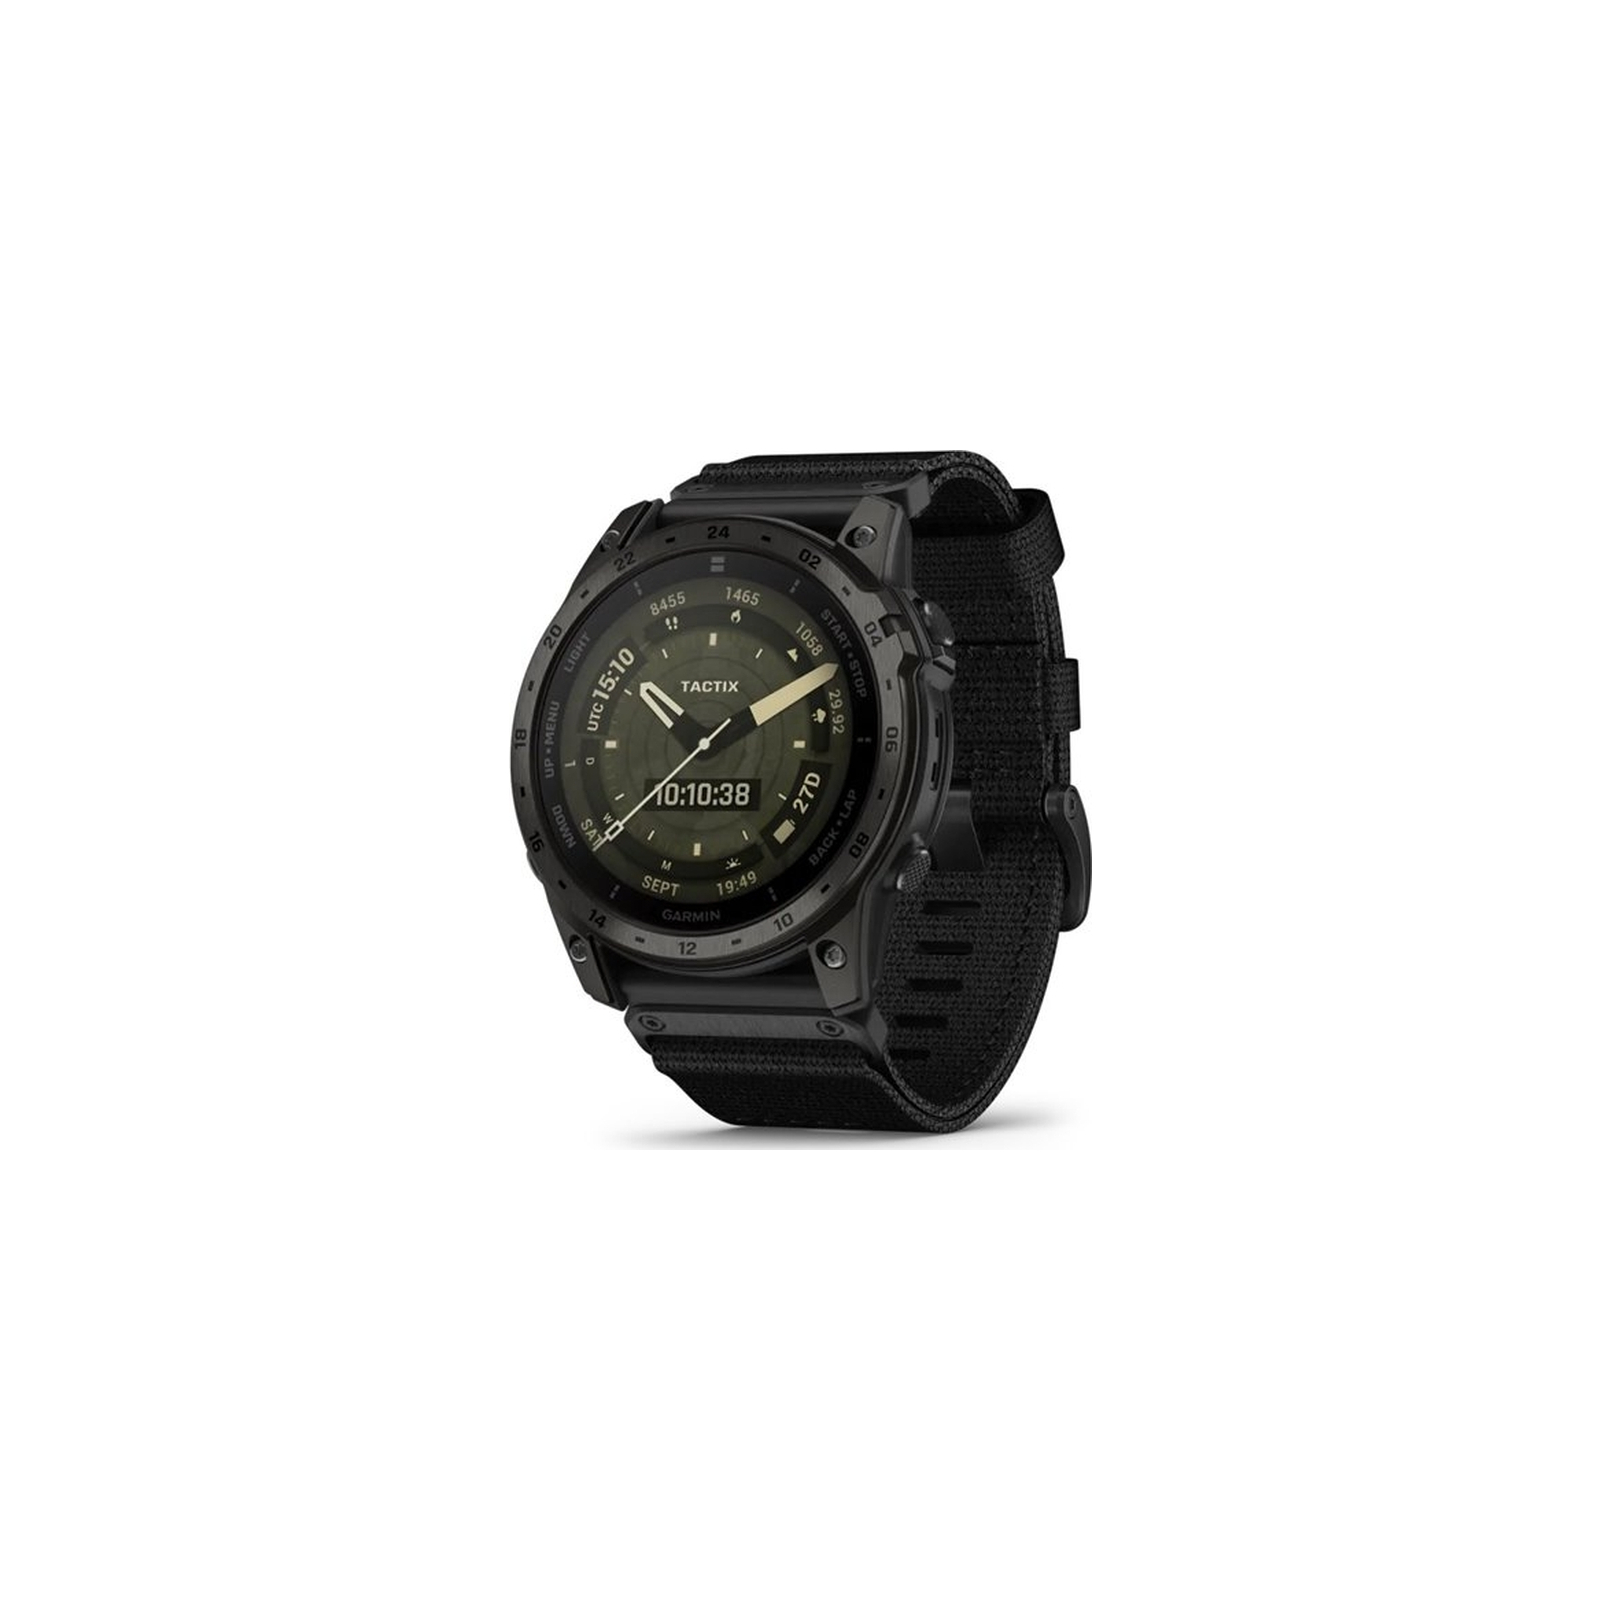 Смарт-часы Garmin tactix 7, AMOLED, GPS (010-02931-01)